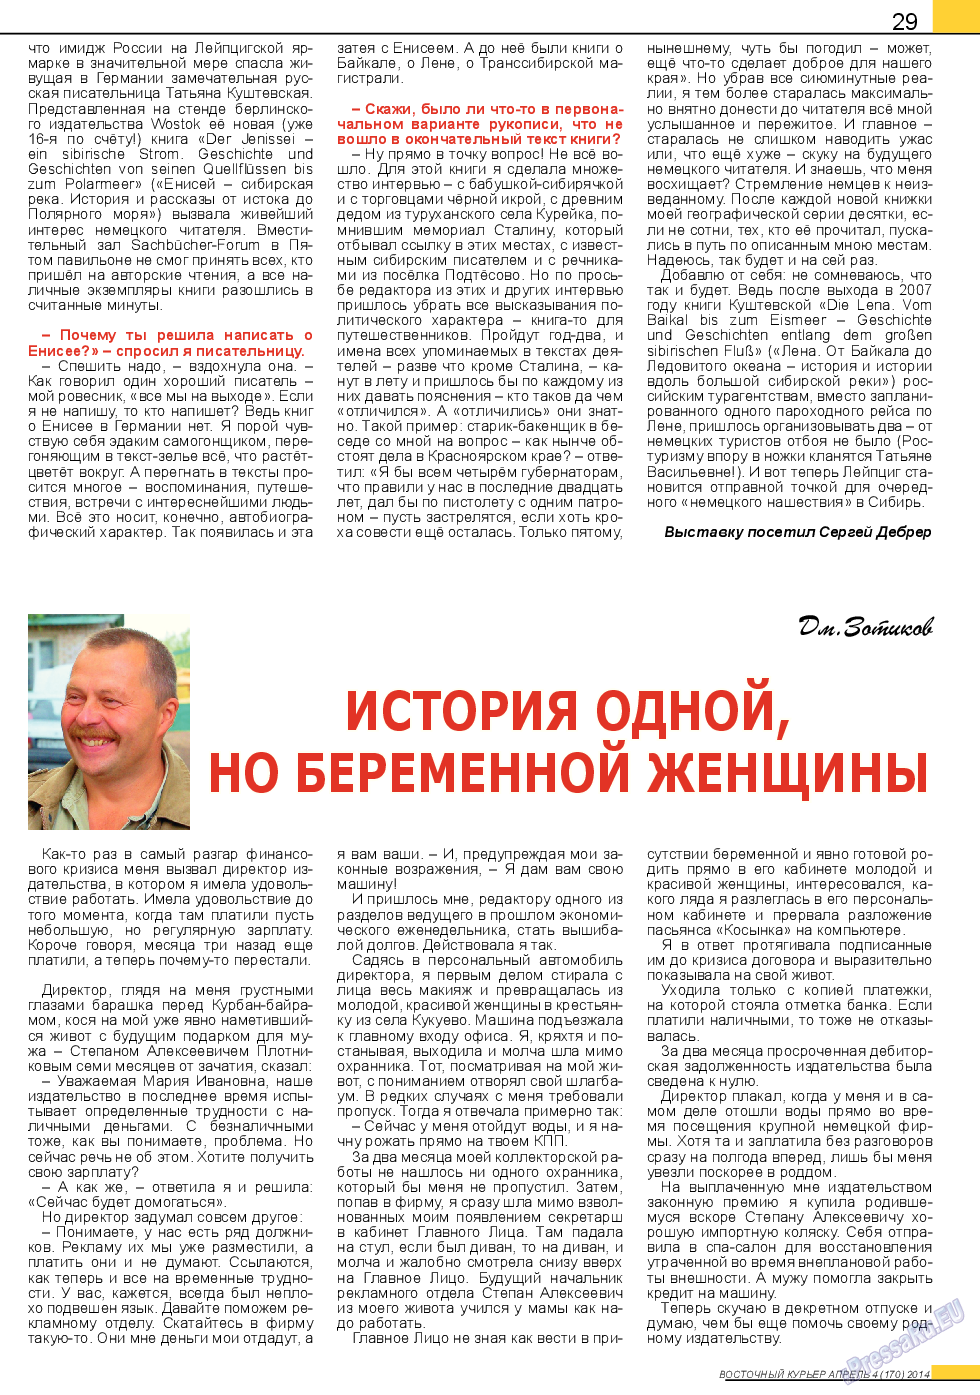 Восточный курьер (журнал). 2014 год, номер 4, стр. 29